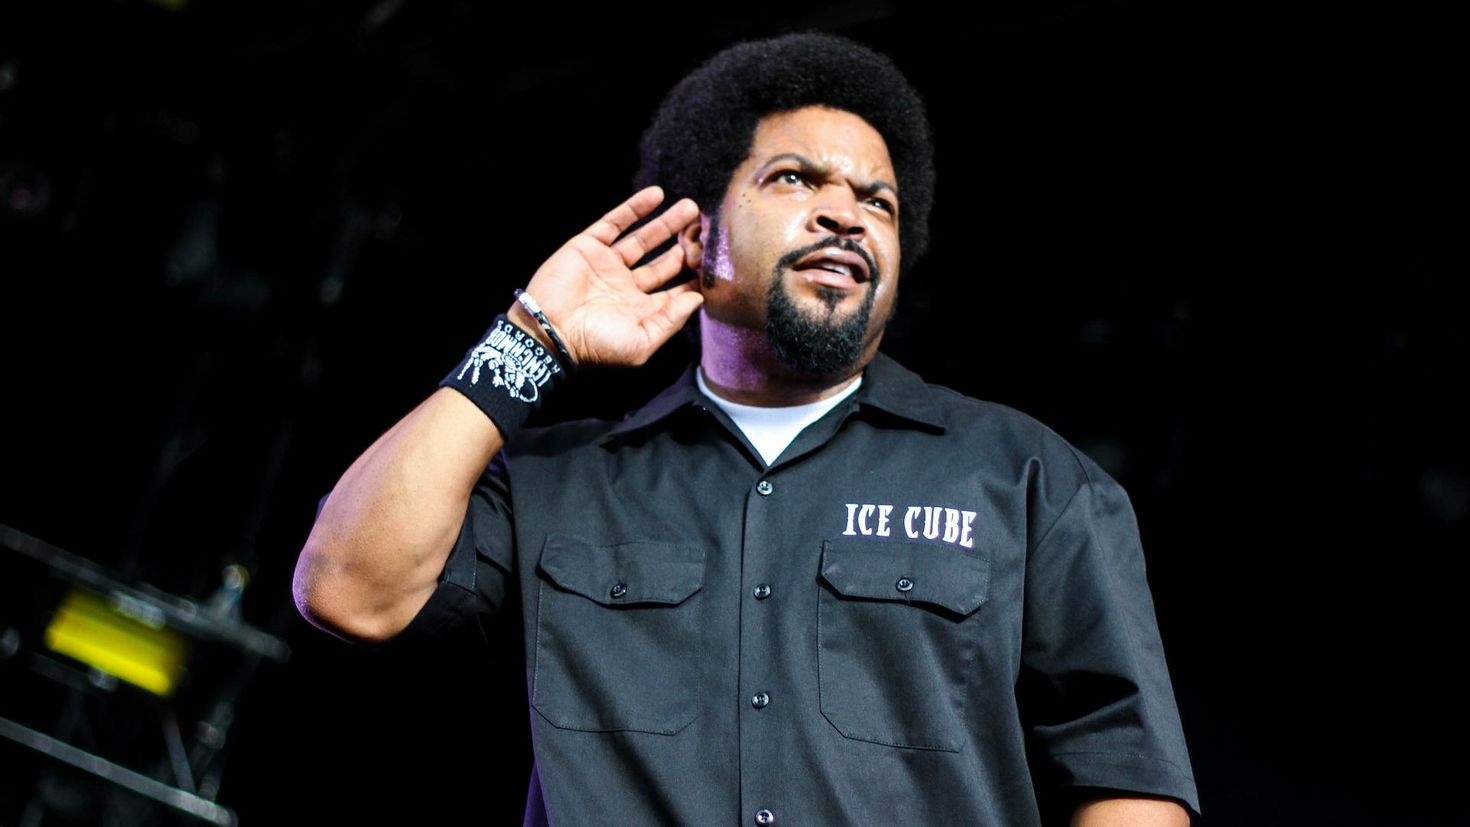 Ice cube ic. Ice Cube Rapper. Айс Кьюб (Ice Cube). Ice Cube 2011. Ice Cube 2000.